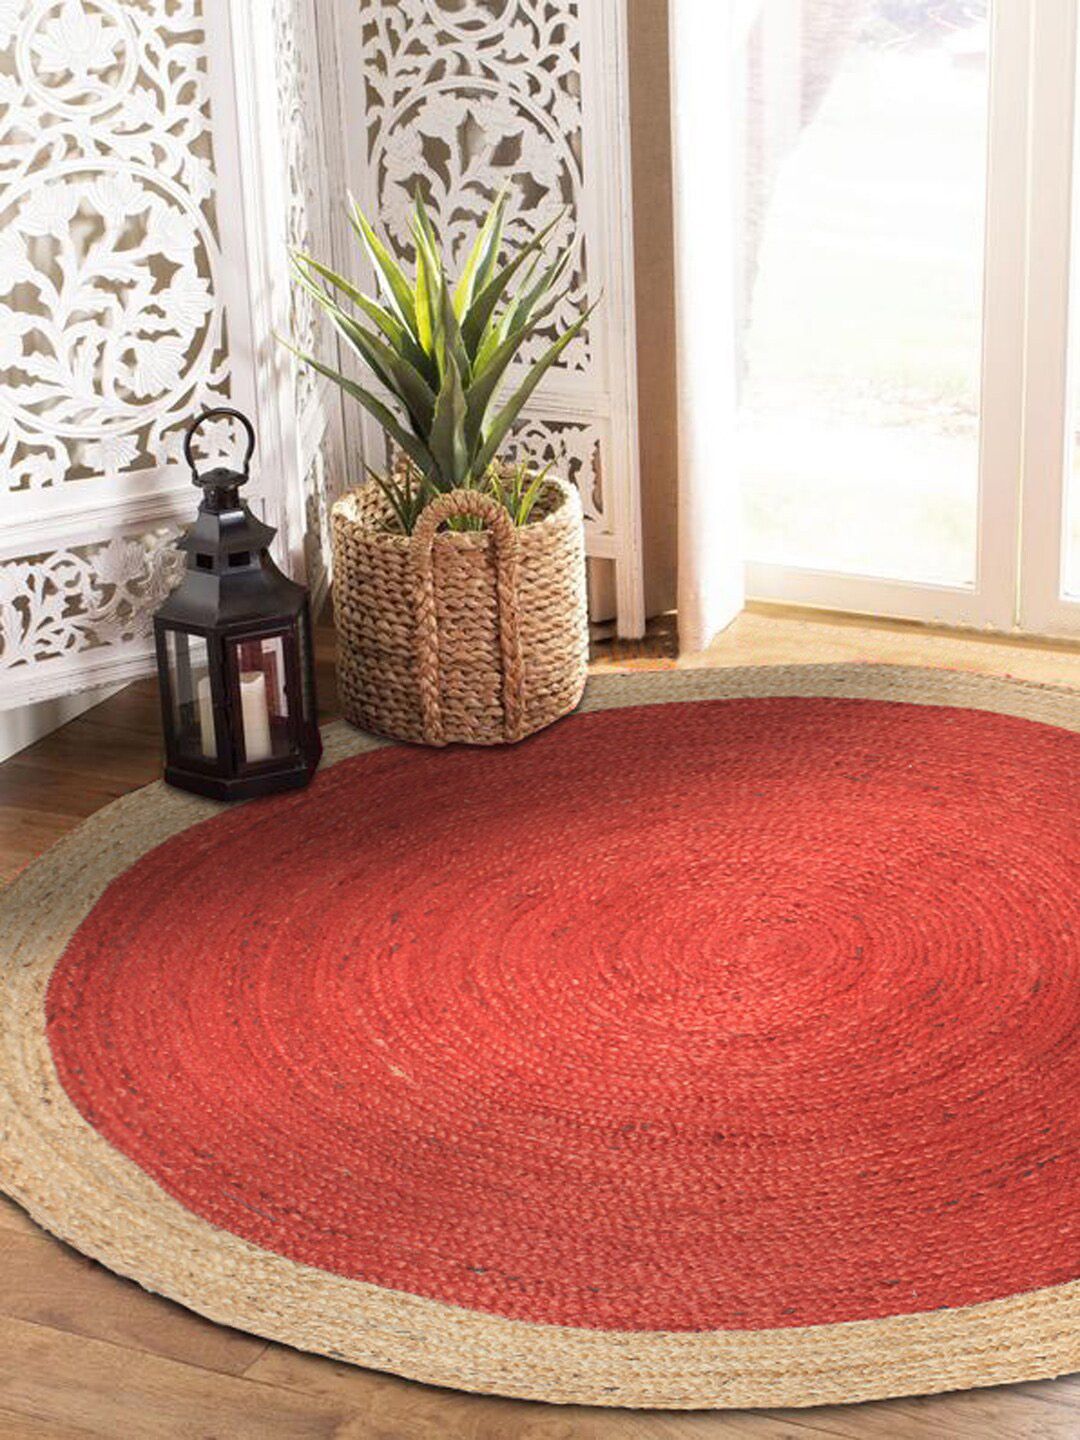 HABERE INDIA  Red Solid Jute Carpet Price in India